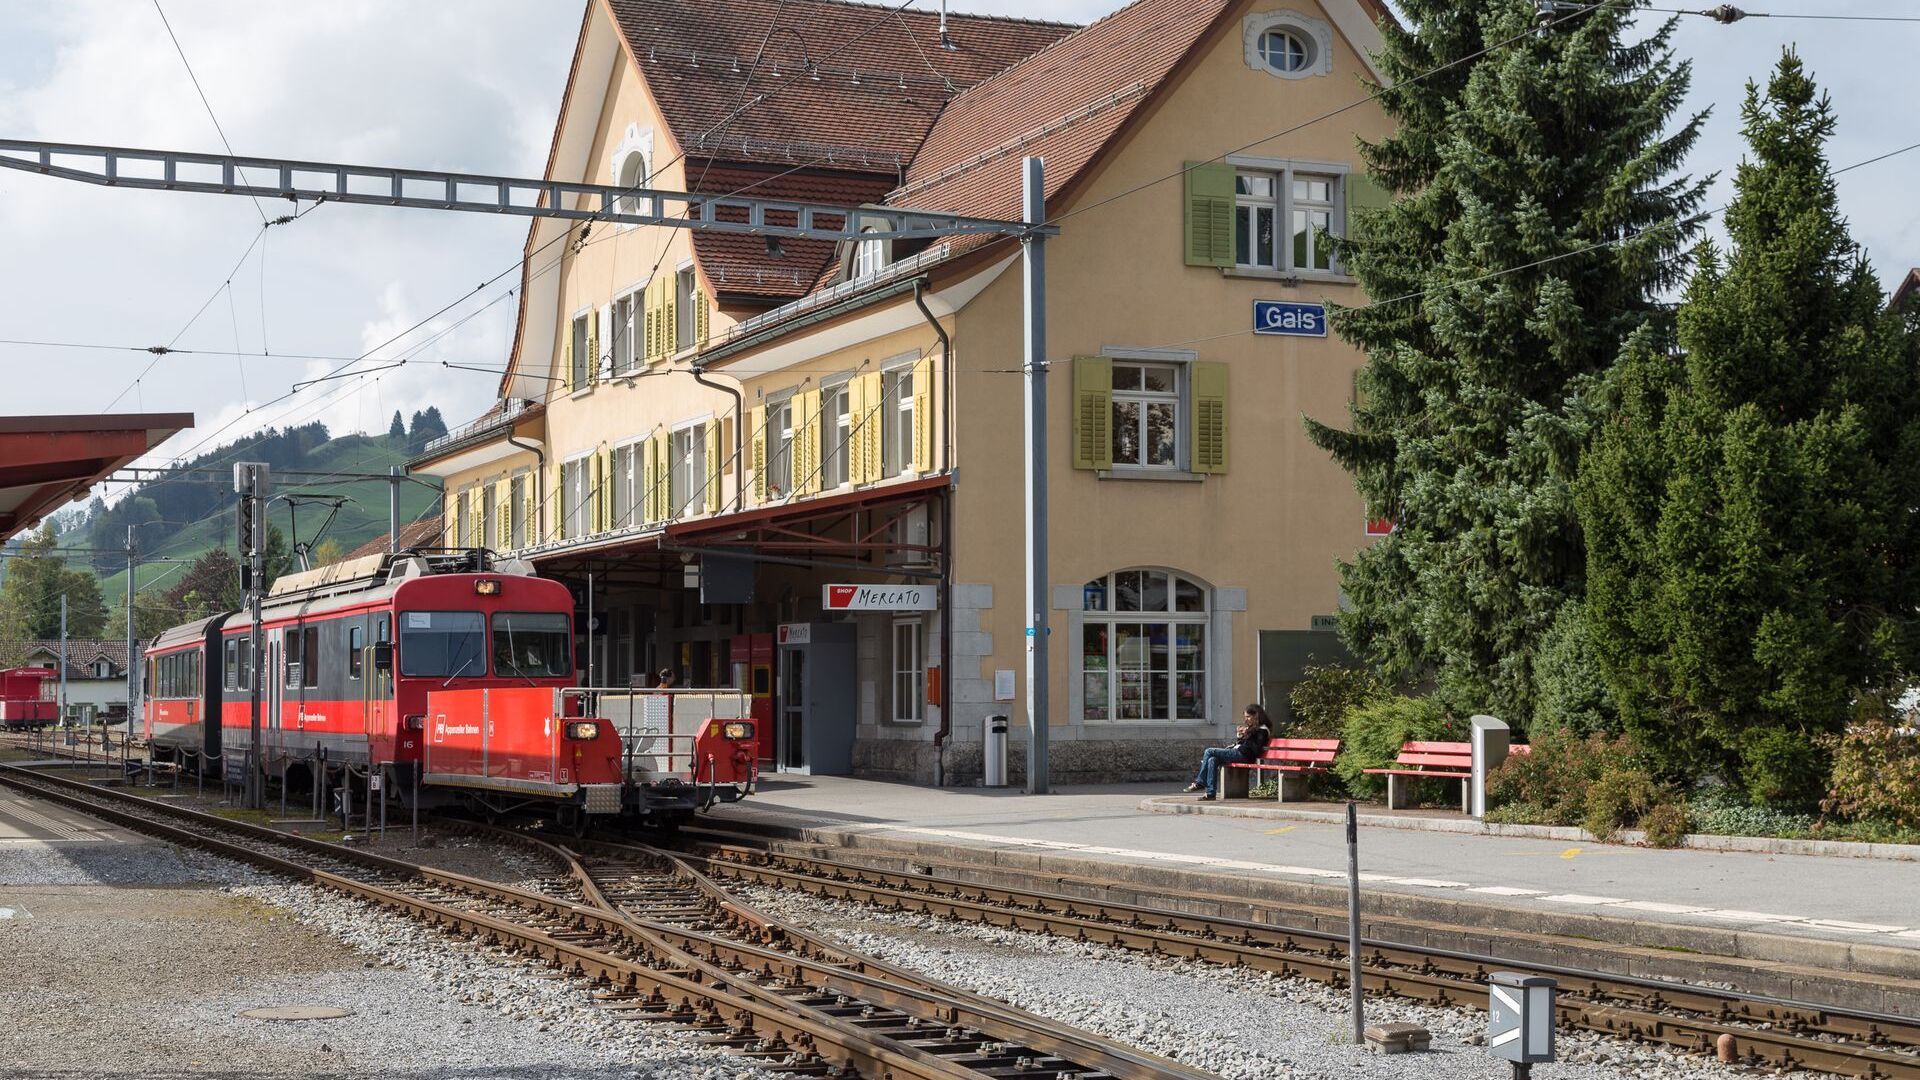 Železniška postaja občine Gais v Appenzell Ausserrhoden